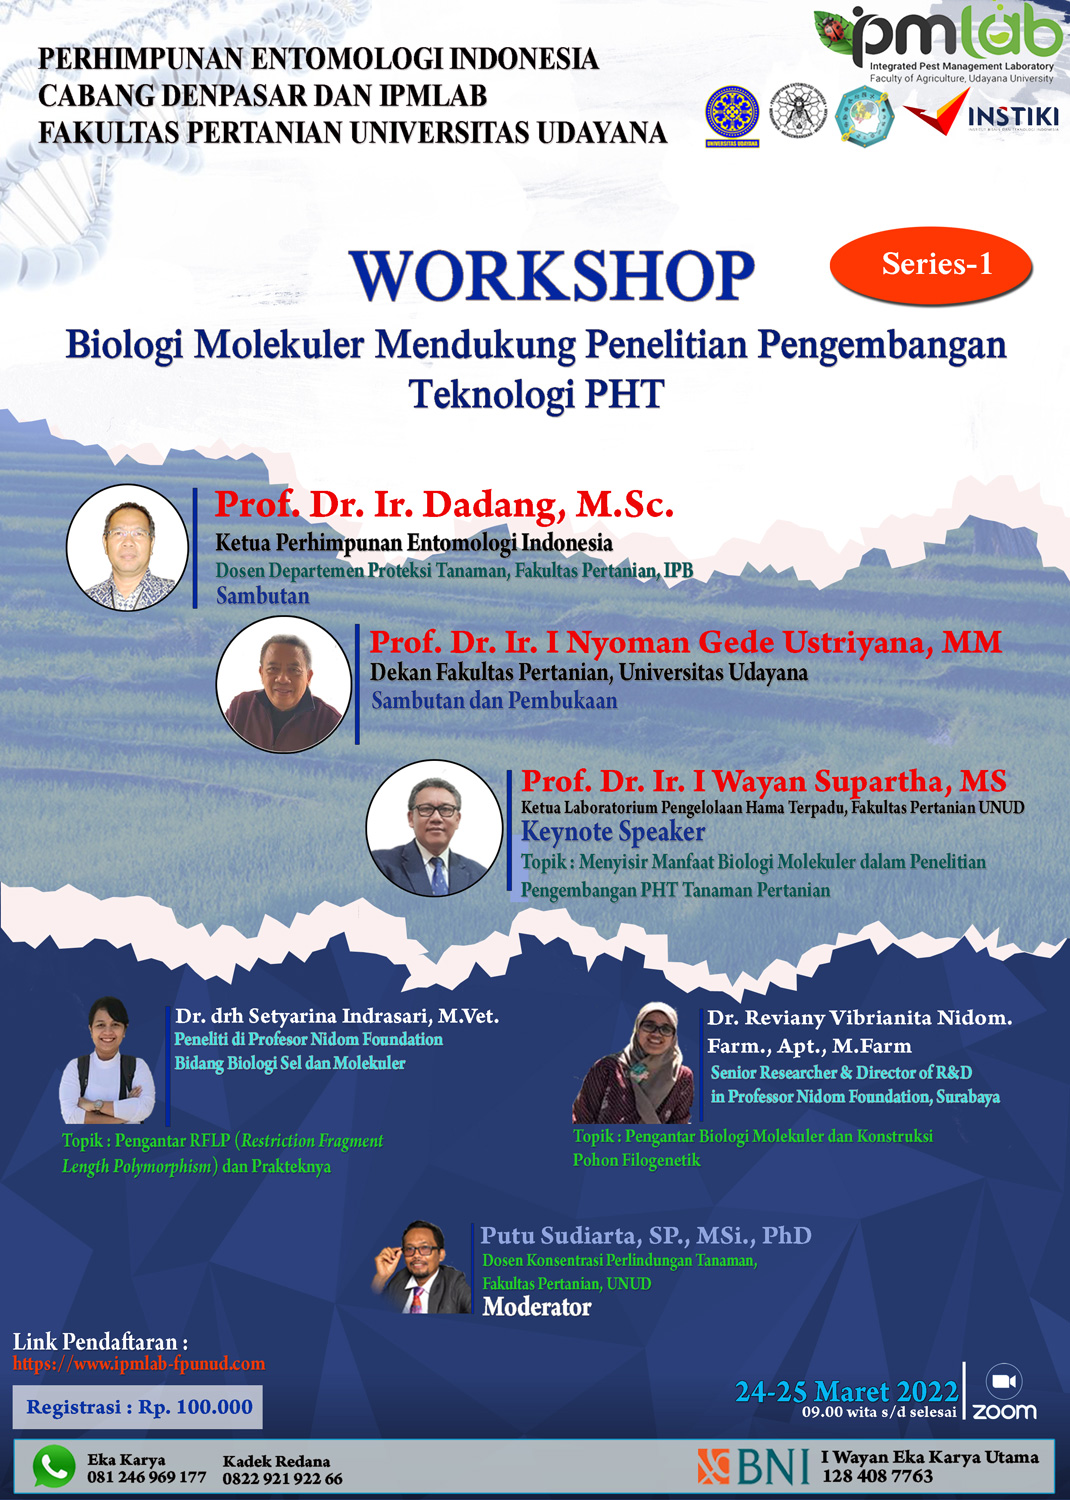 Workshop : Biologi Molekuler Mendukung Penelitian Pembangunan Teknologi PHT